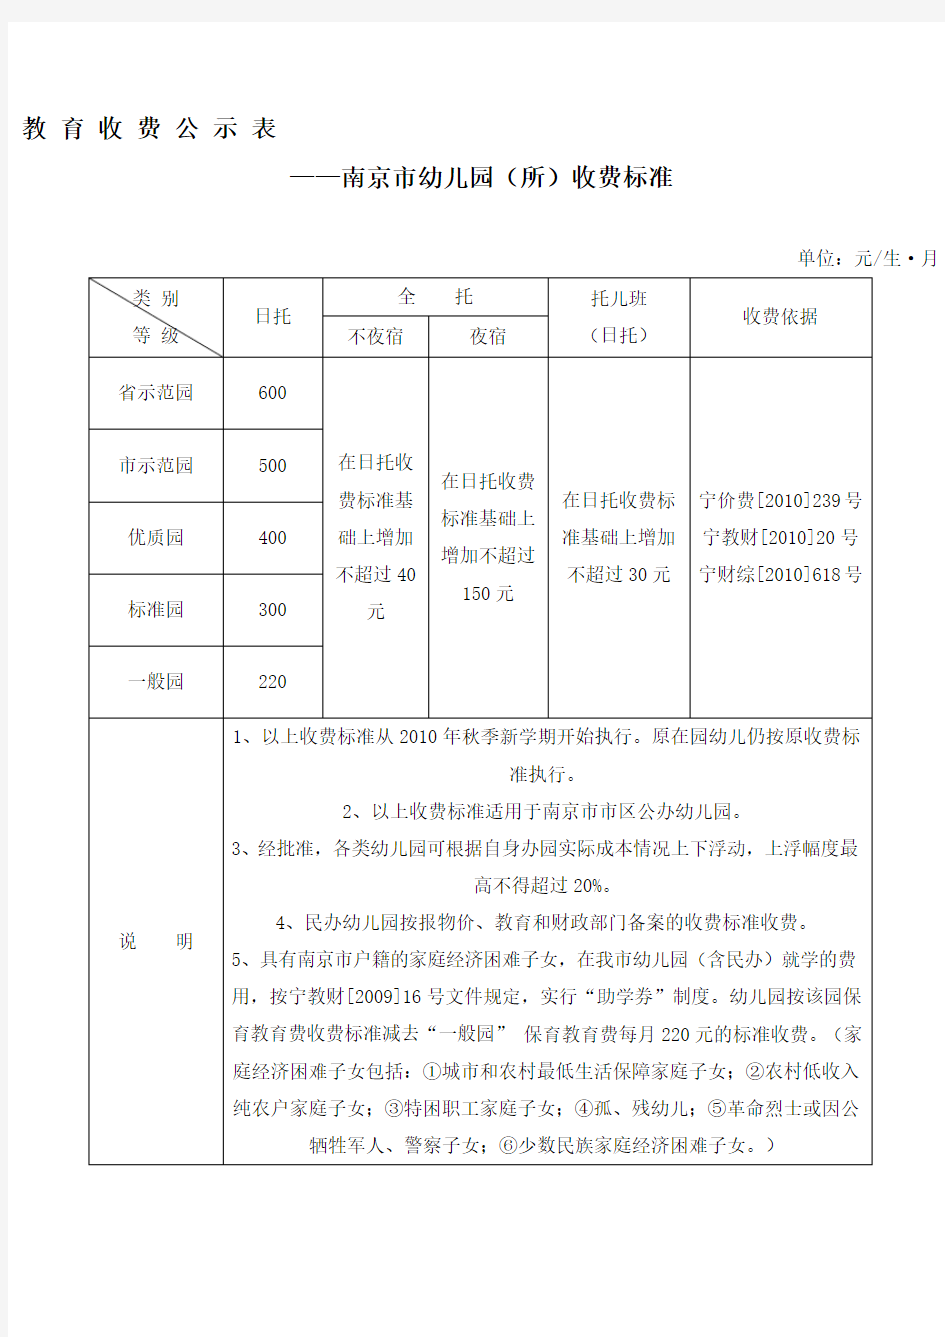 南京市幼儿园所教育收费公示标准表